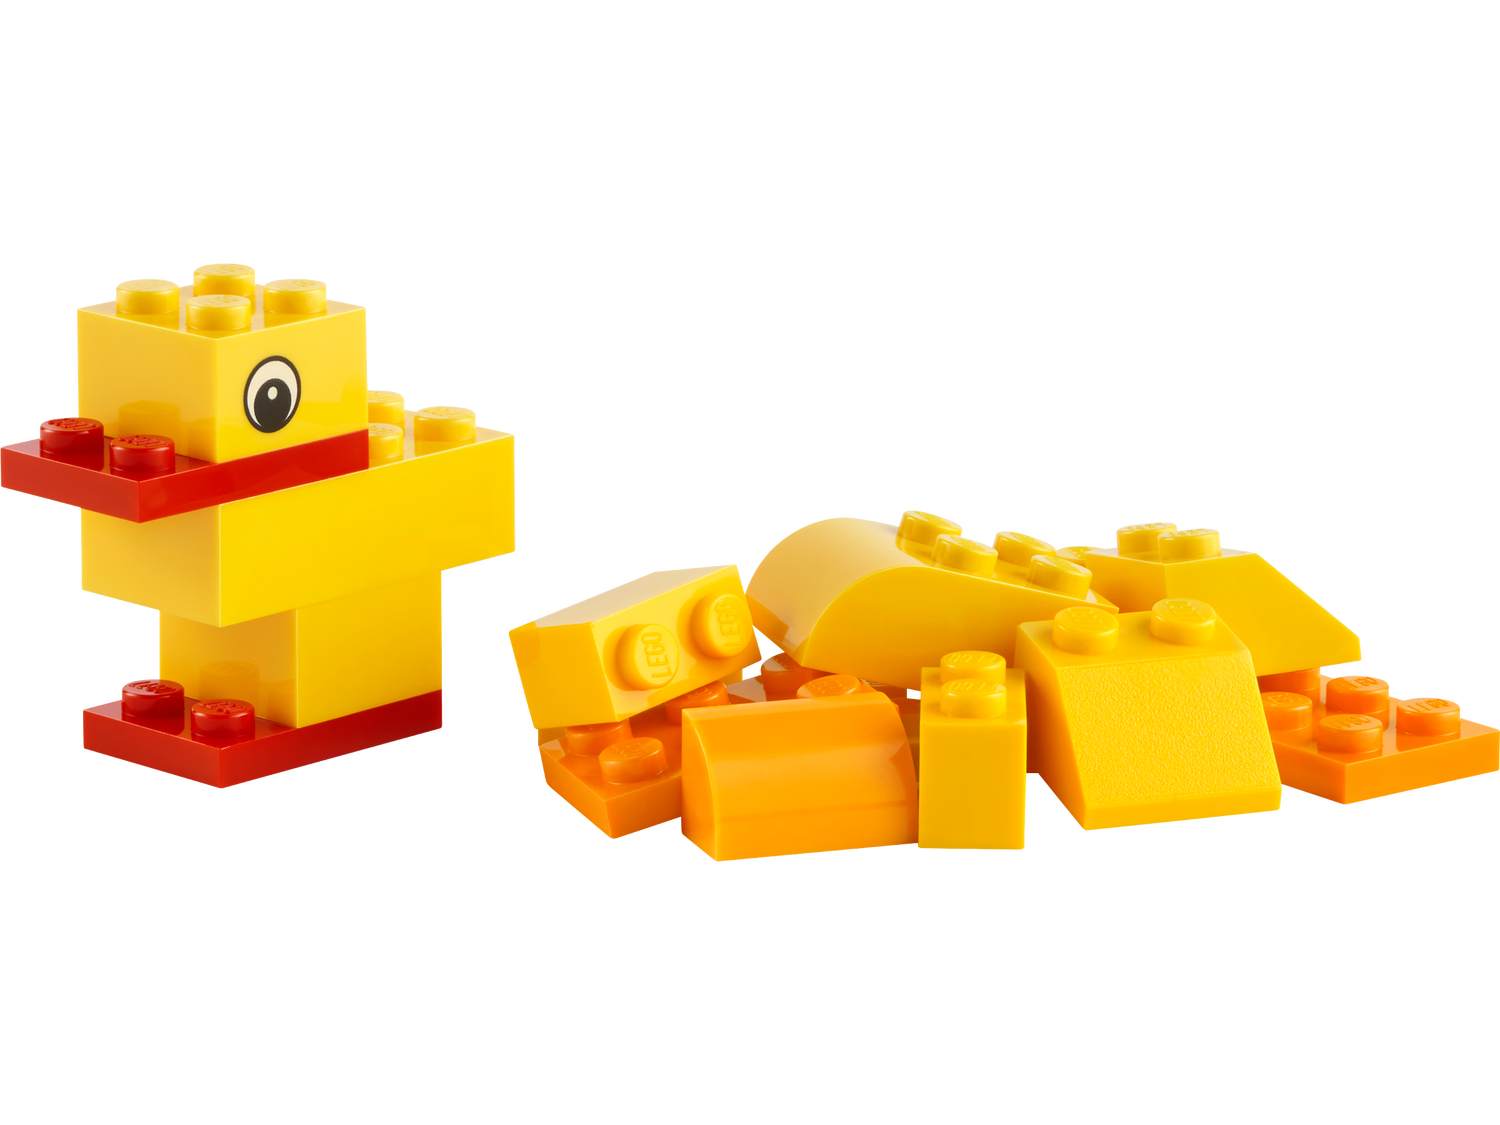 Конструктор Lego Creator Животные 30503